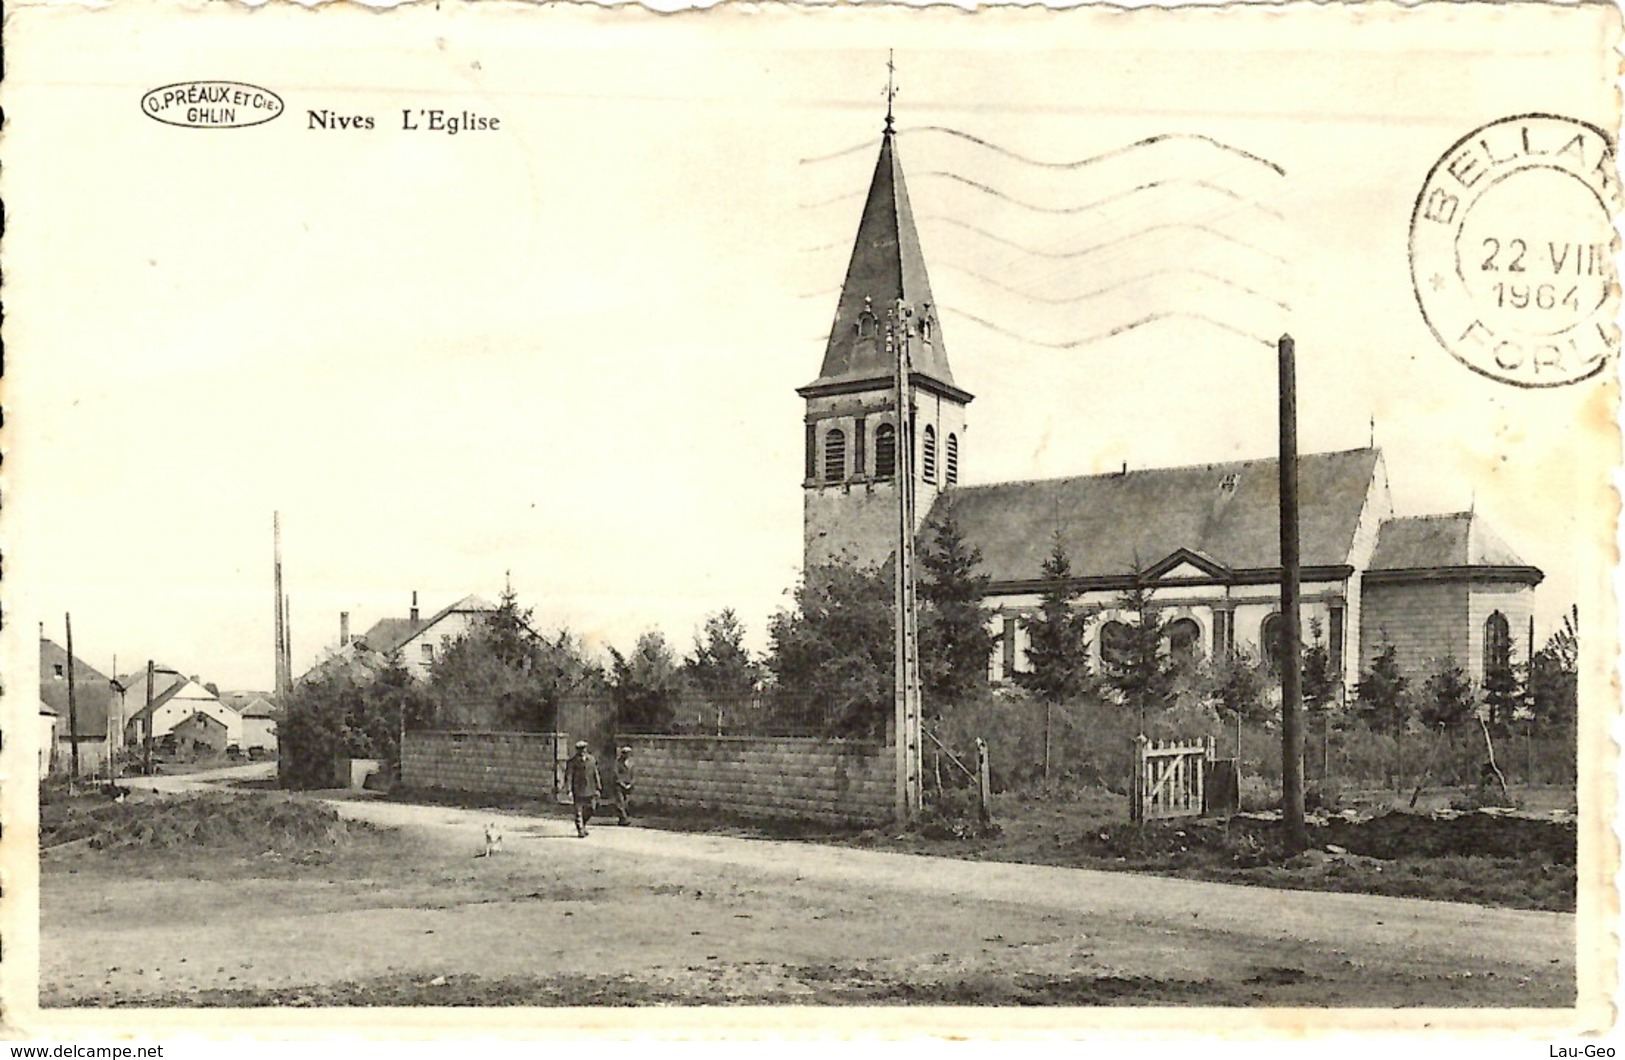 Nives (Vaux-sur-Sure) L'Eglise - Vaux-sur-Sûre